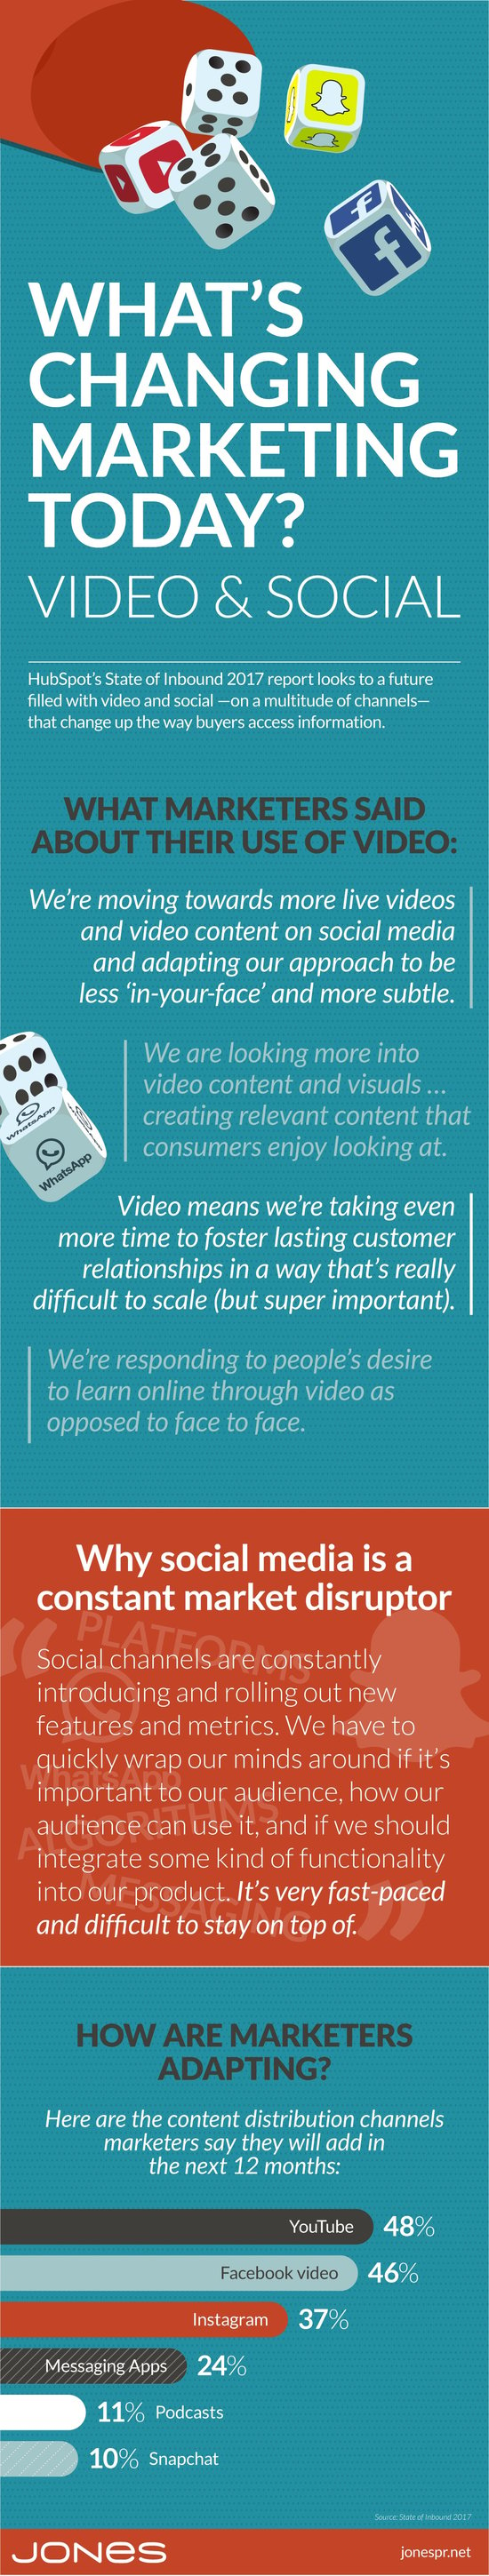 jones-video-social-marketing-disruptors.jpg